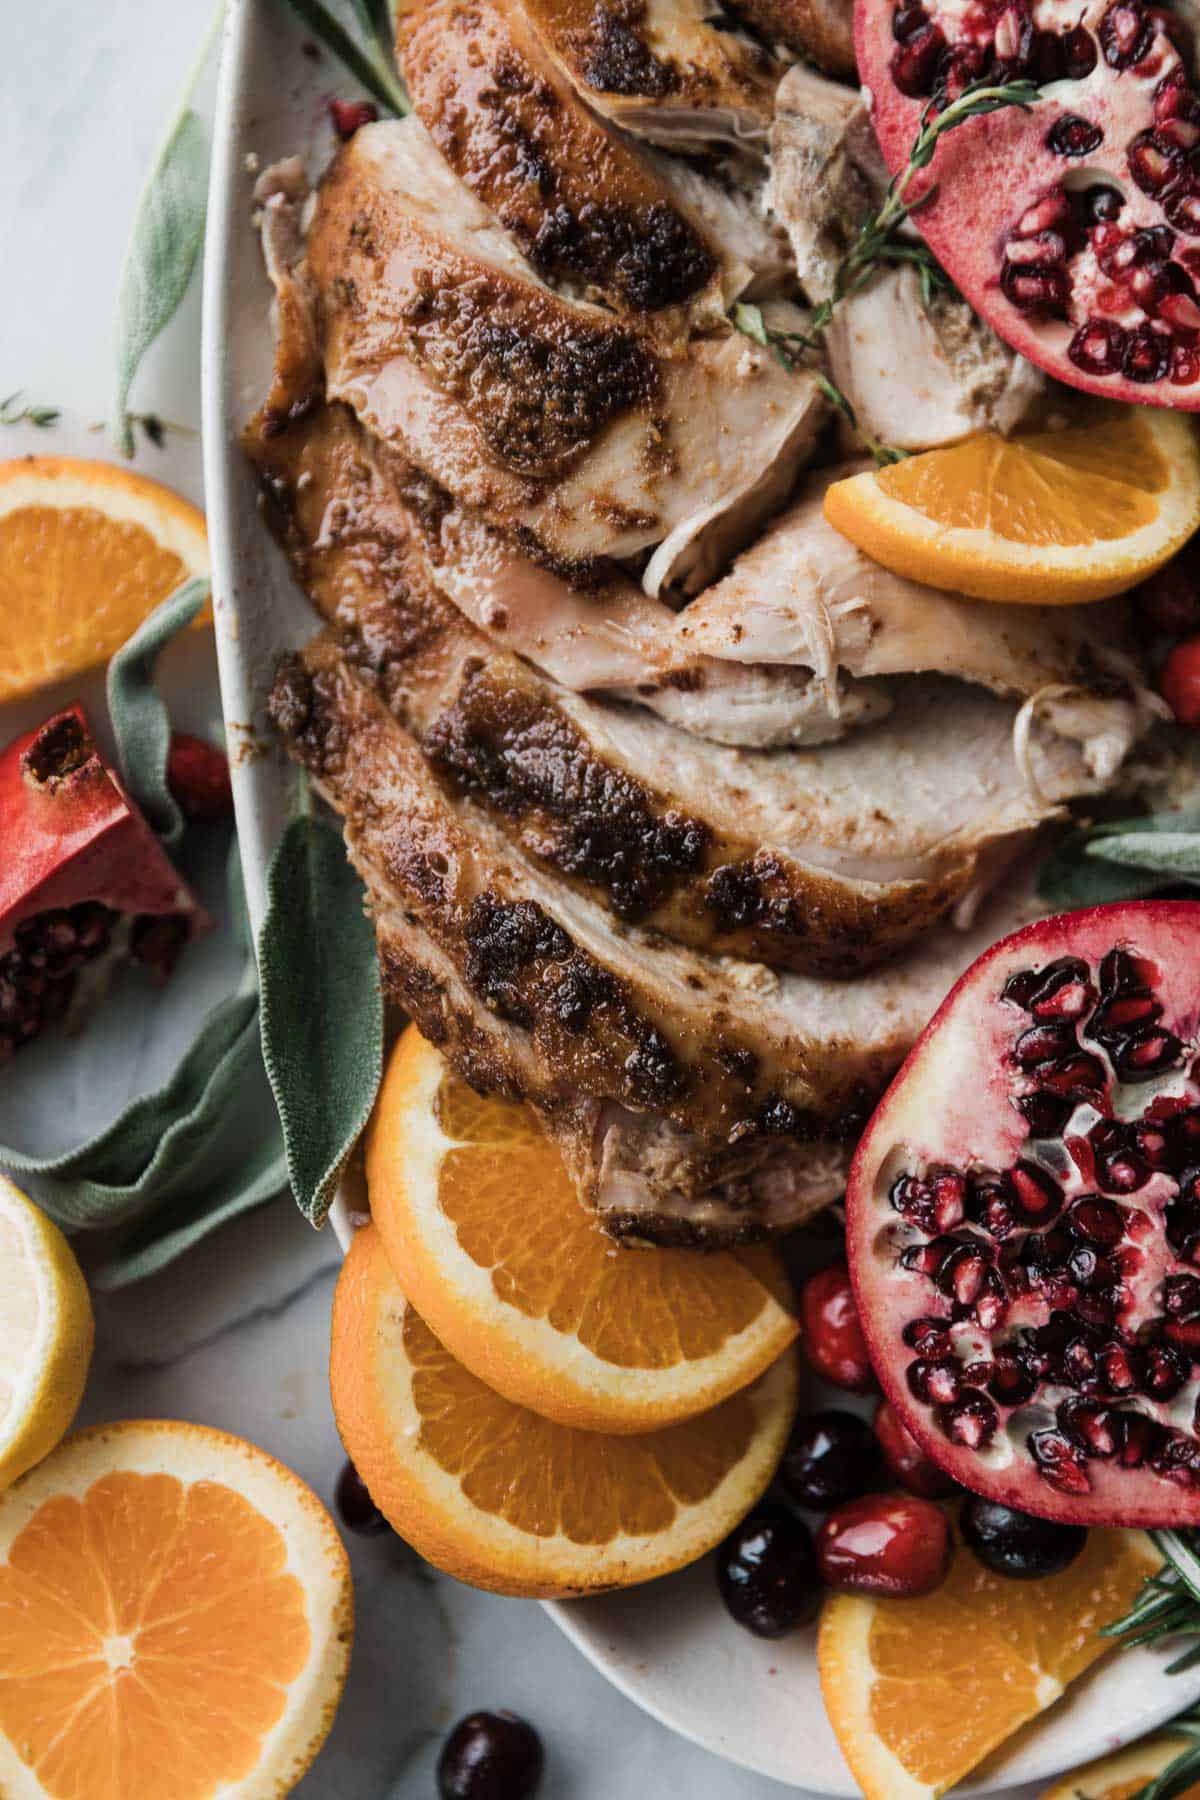 Sliced juicy thanksgiving turkey on a platter